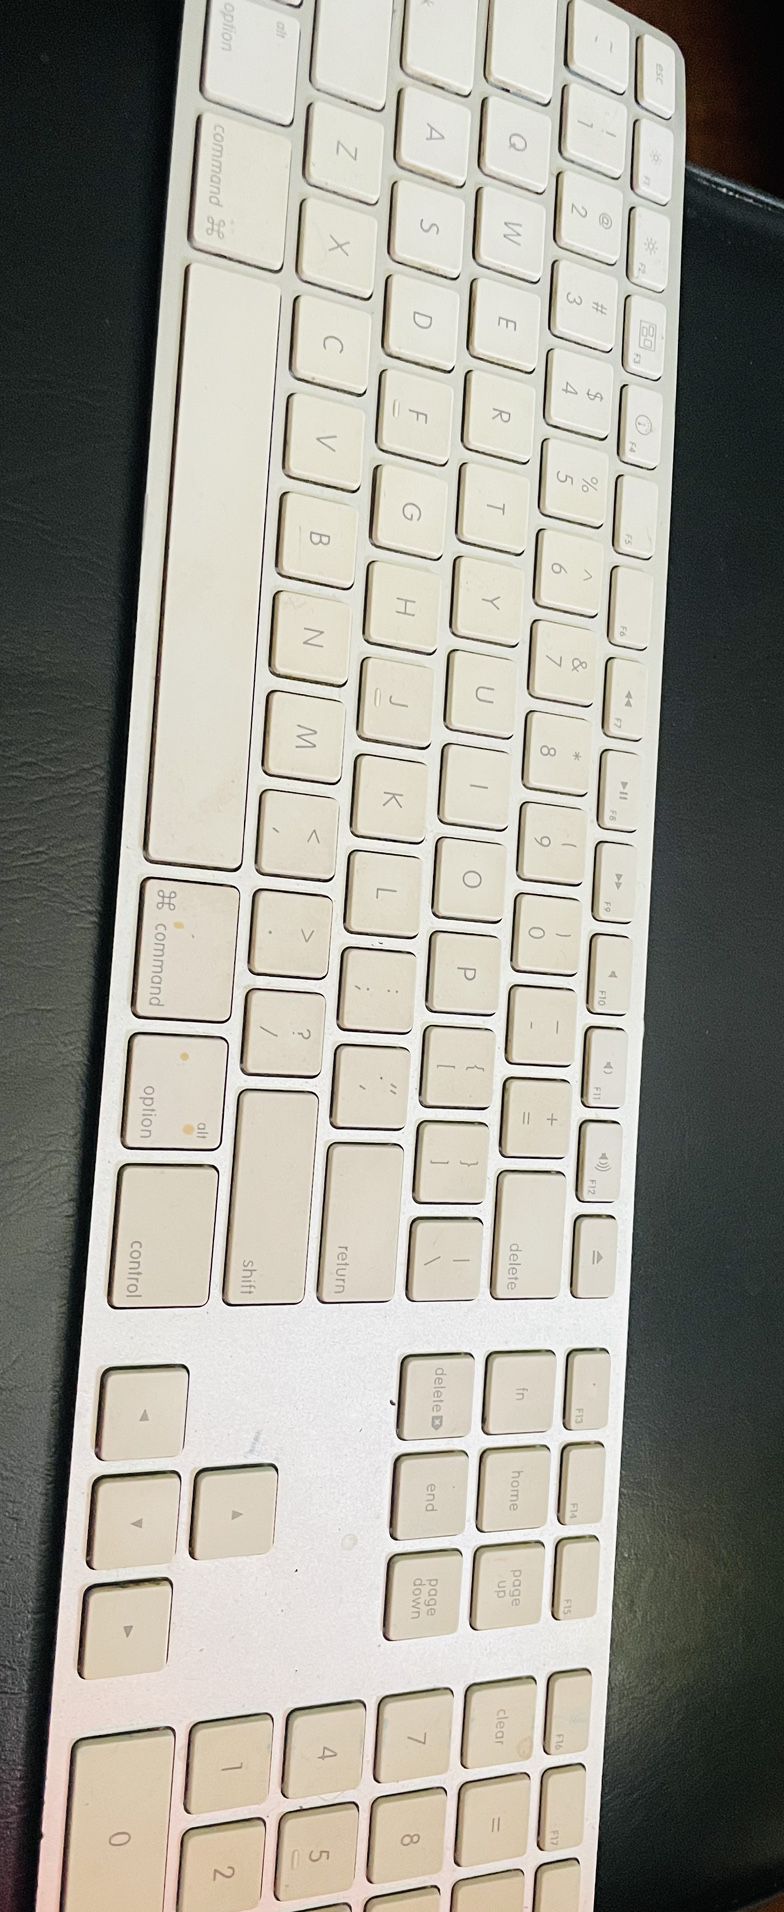 Apple Keyboard 